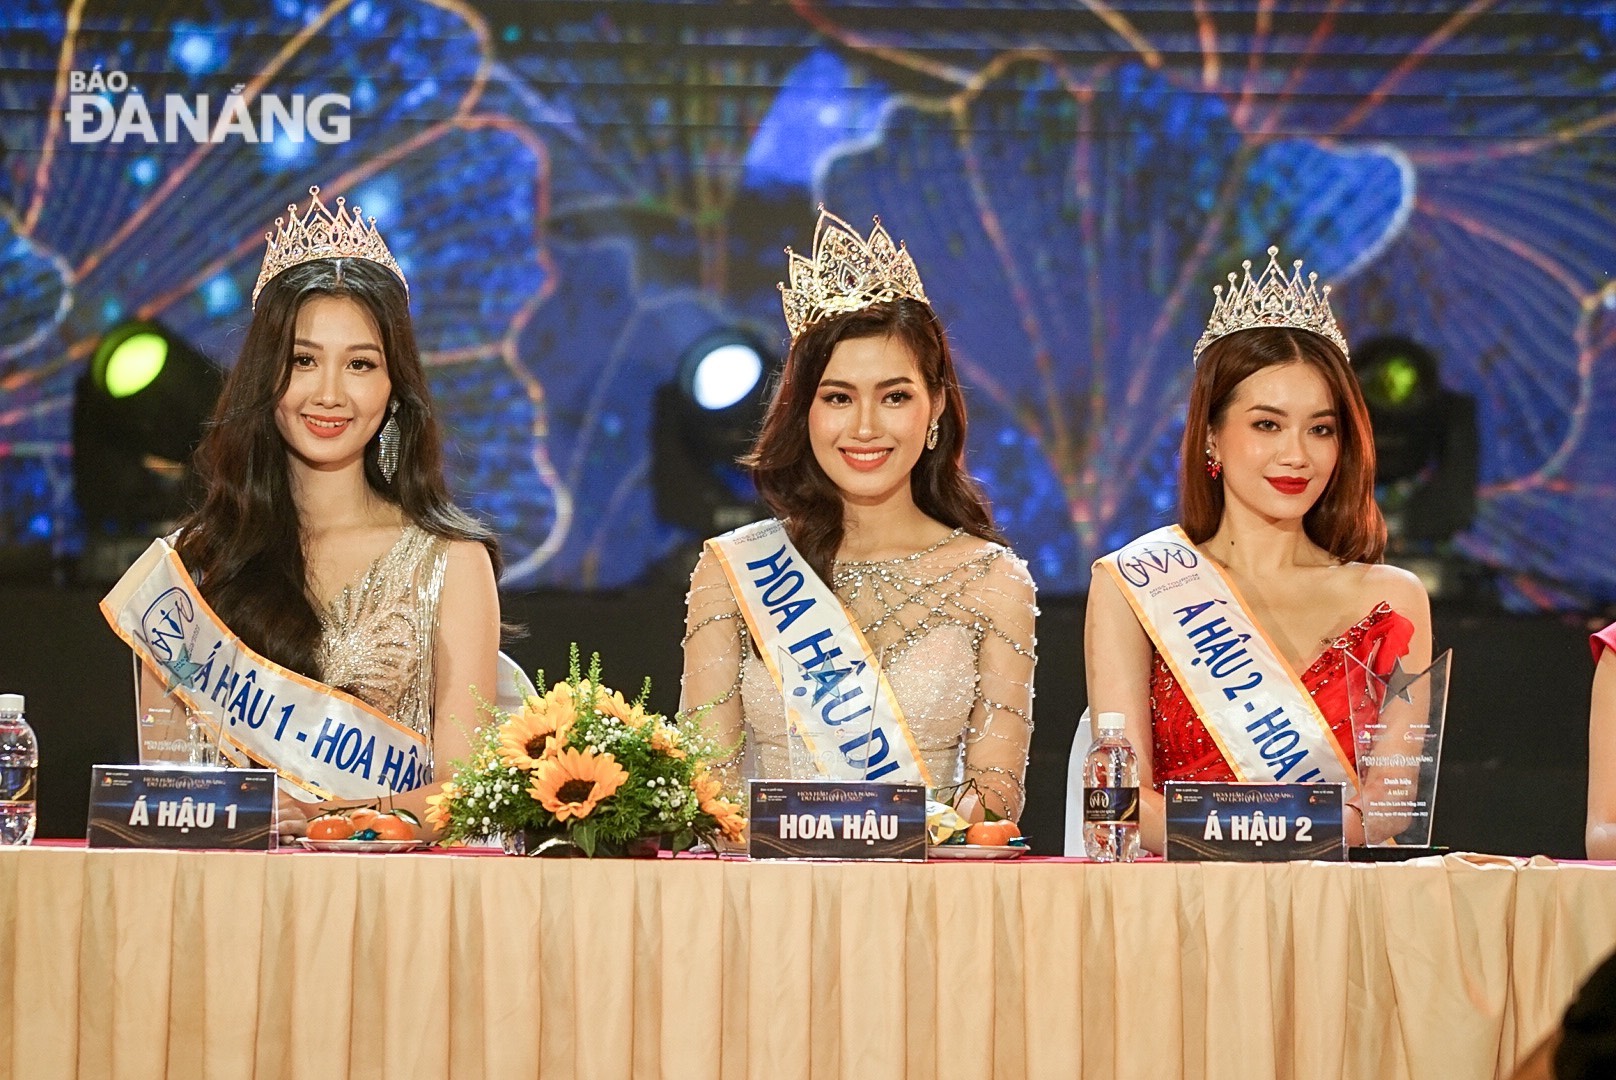 Á hậu 1, Hoa hậu và Á hậu 2 (từ trái qua phải) cuộc thi Hoa hậu Du lịch Đà Nẵng năm 2022. Ảnh: DUYÊN ANH